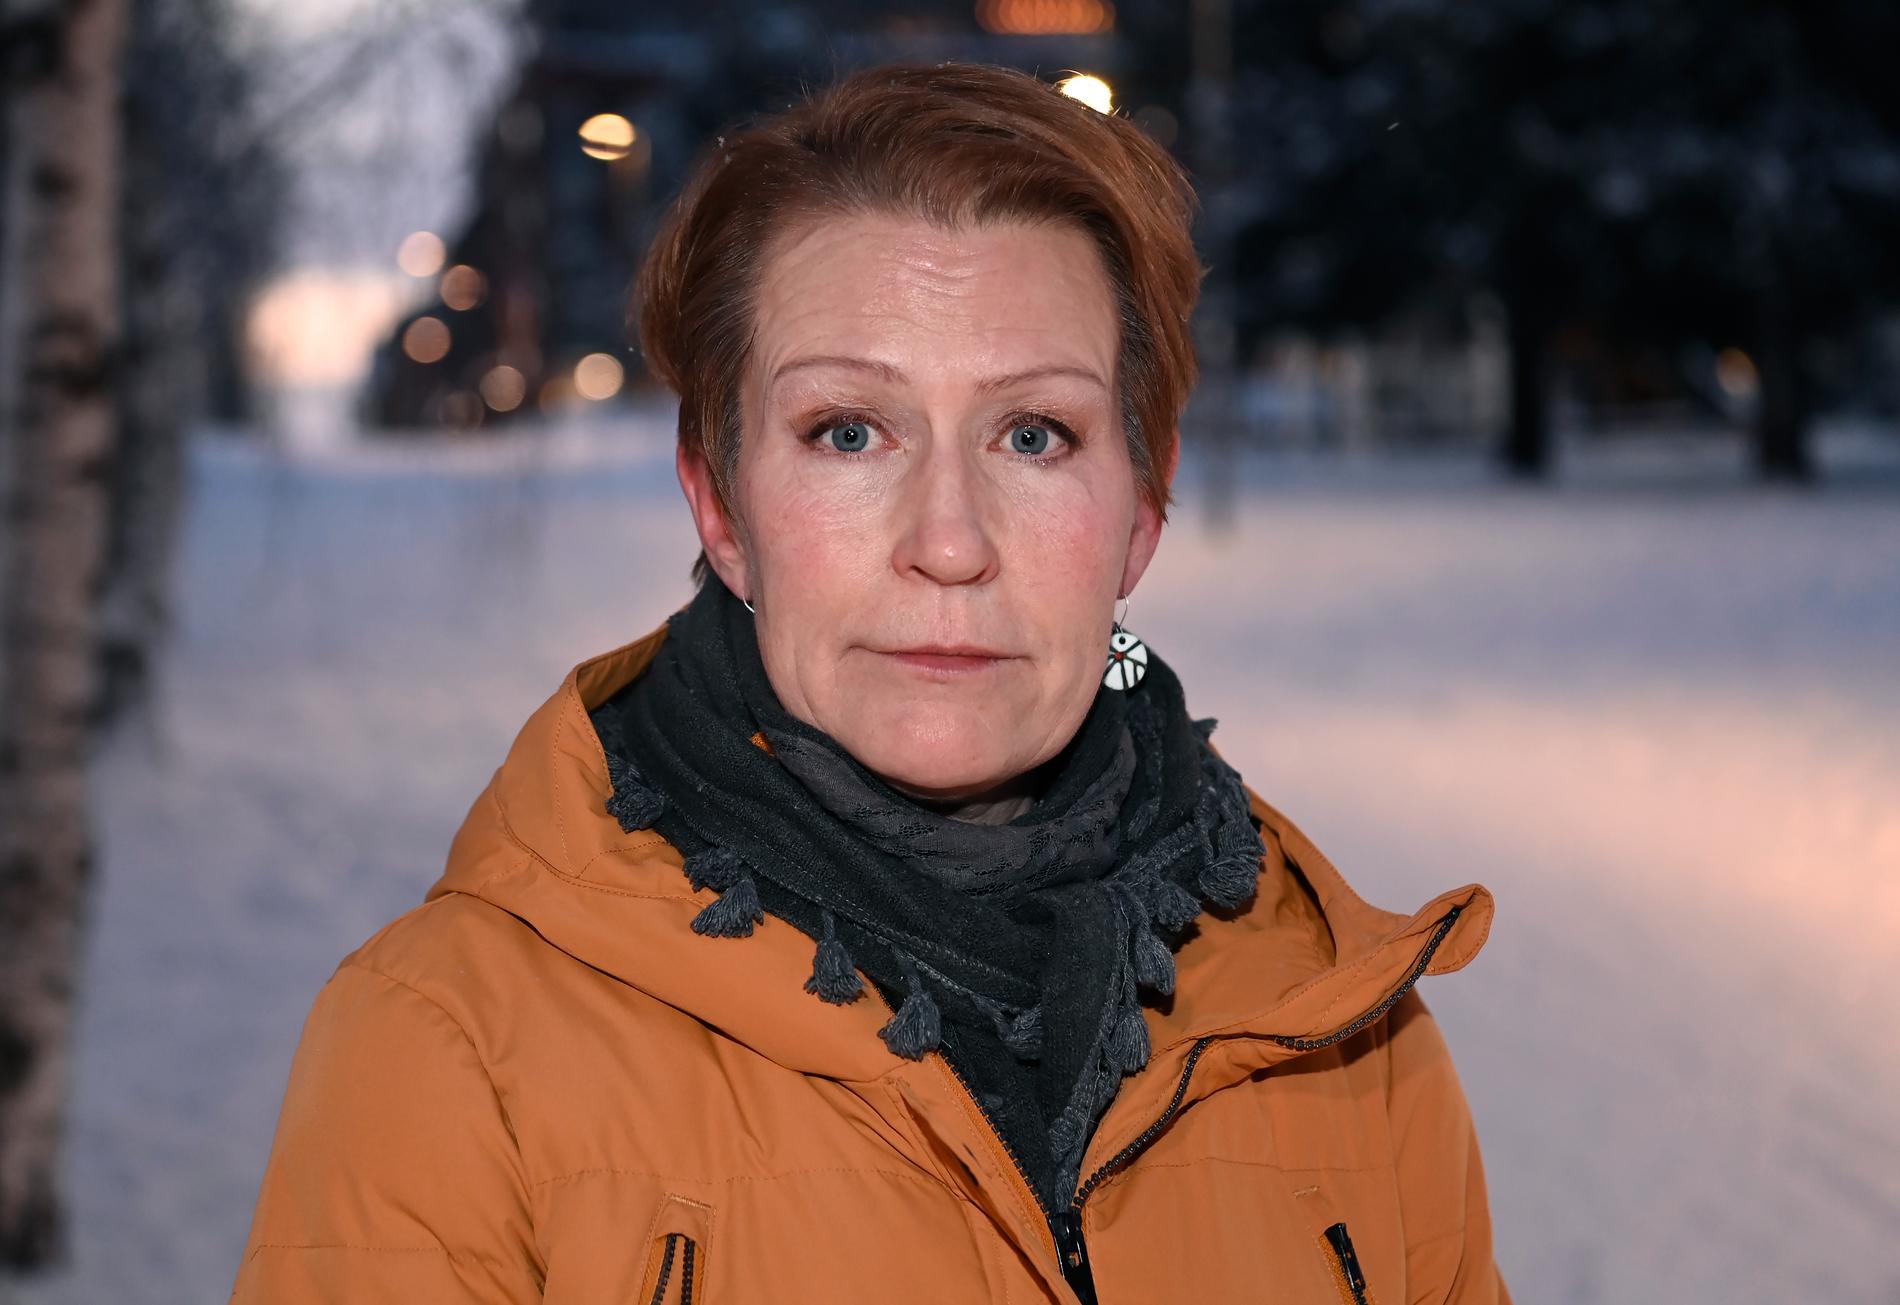 För Anita Esberg, 53, från Kiruna har gängens utbredning i norr hittills inte varit ett orosmoln. Hon minns hur brottslingar tidigare försökt etablera sig i Kiruna, men i en mindre stad är det svårt att komma utifrån utan att snabbt få ögonen på sig. ”Nej, jag känner mig inte det minsta otrygg”, säger Anita. 